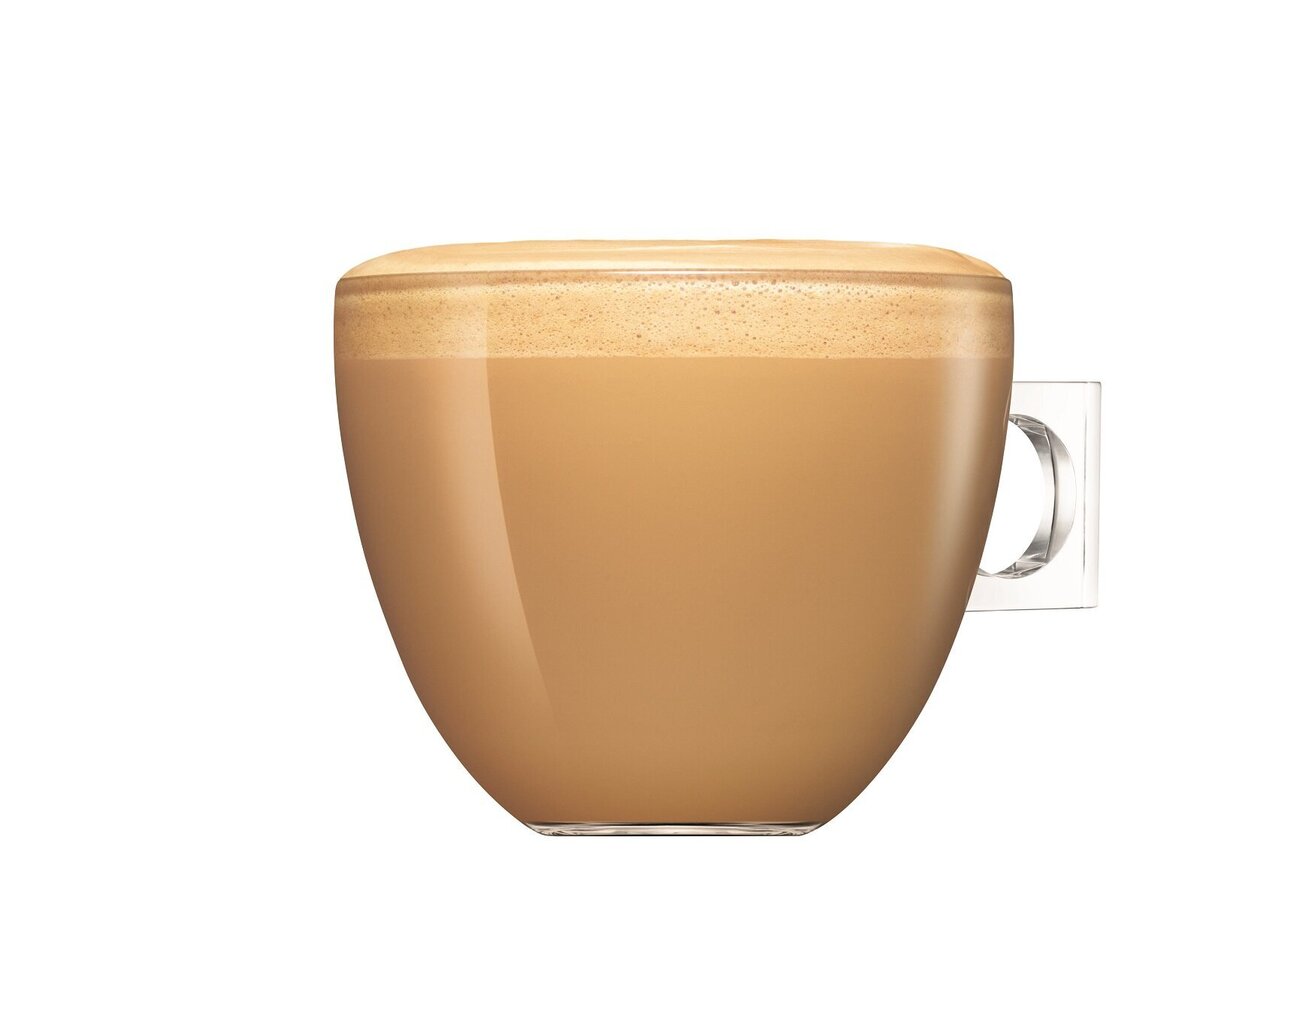 Kohvikapslid Dolce Gusto Flat White, 16 kaps цена и информация | Kohv, kakao | kaup24.ee